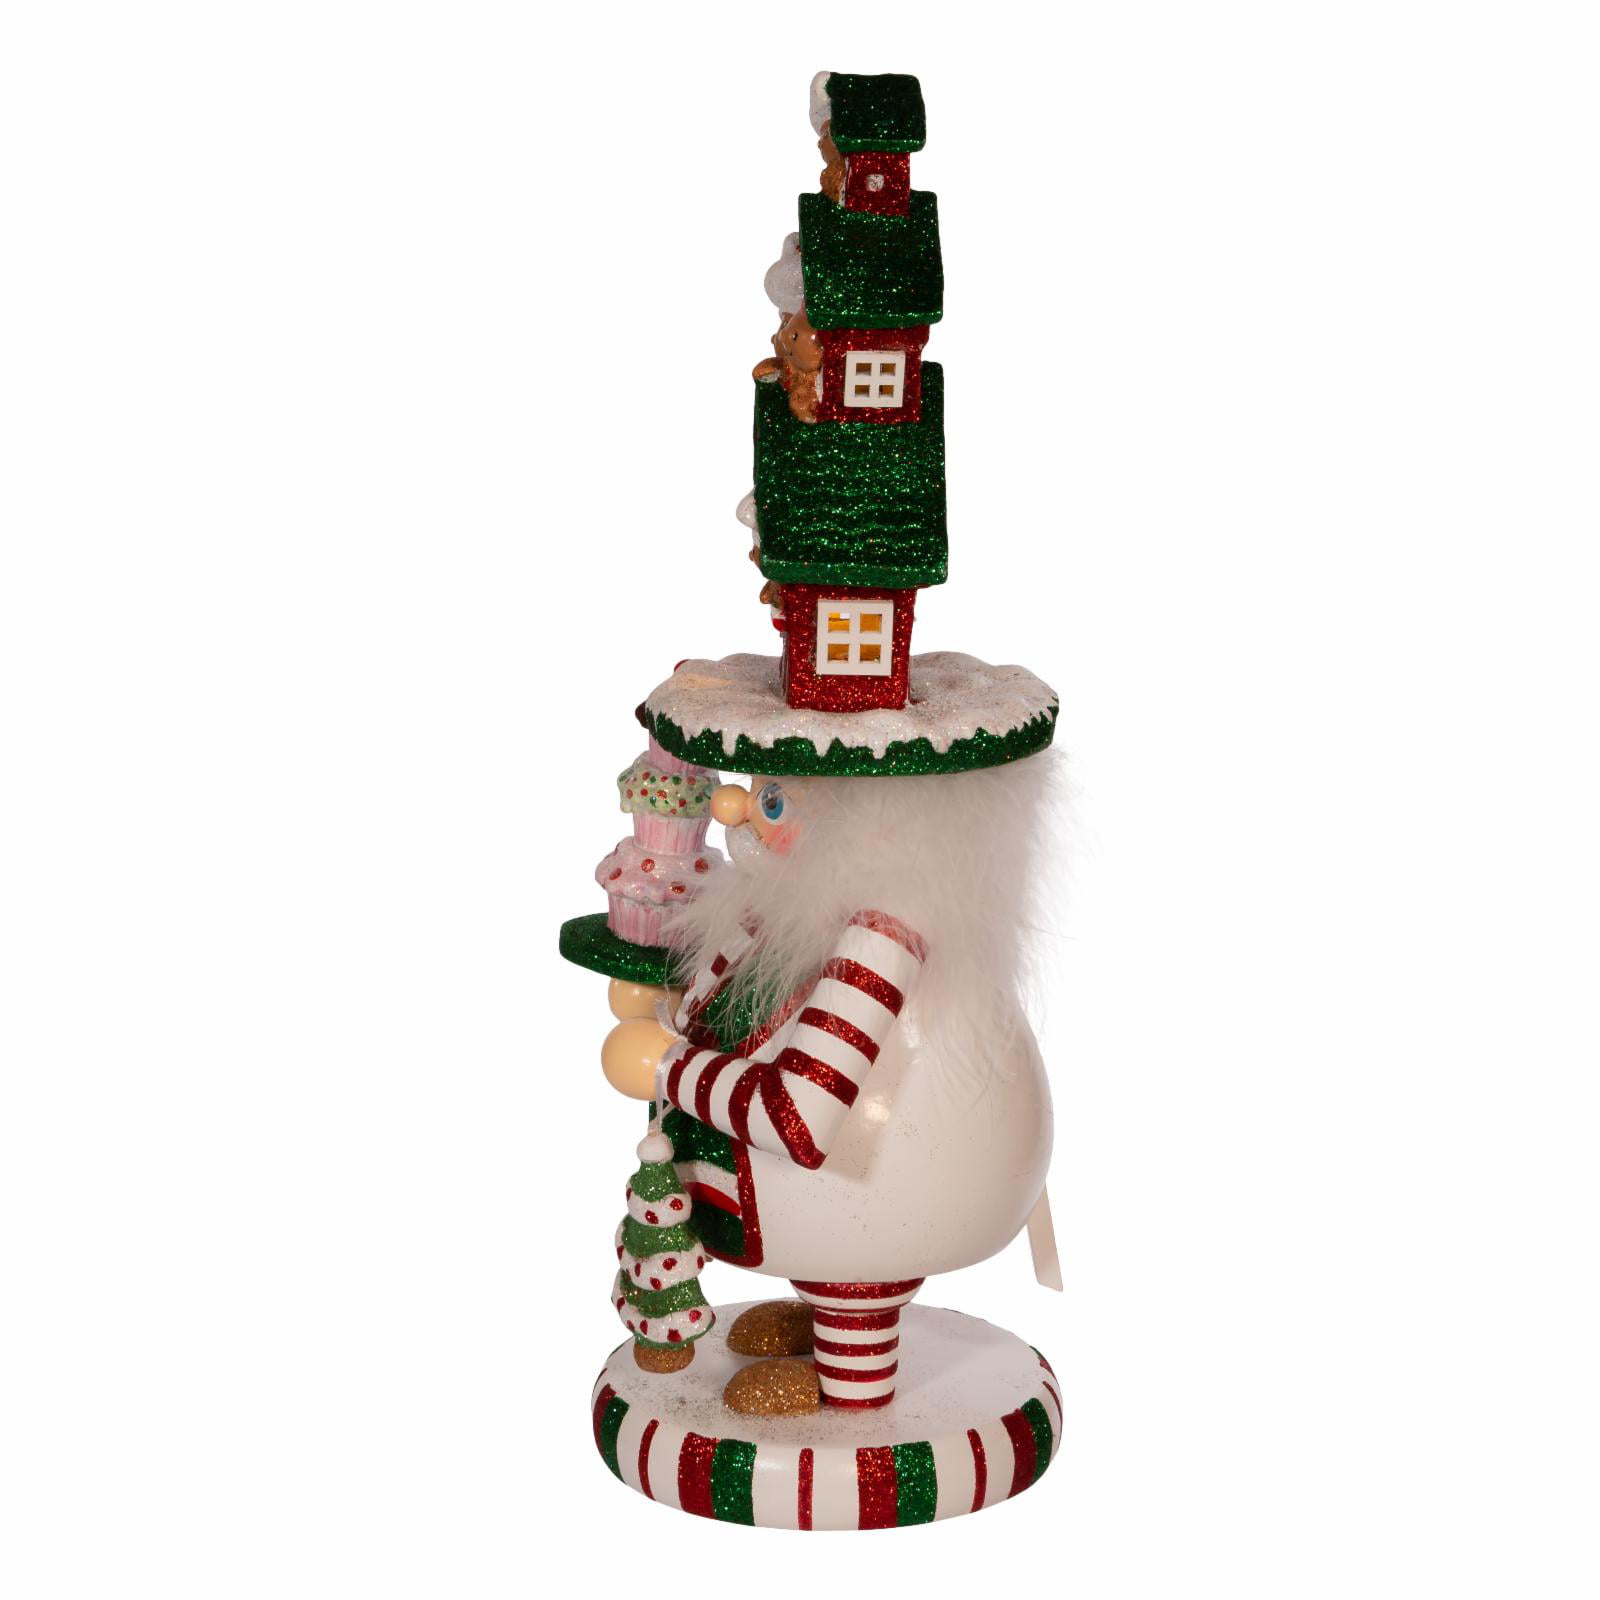 New Lot of 3 Kurt S Adler 5" Gingerbread Nutcracker Ornament Christmas 